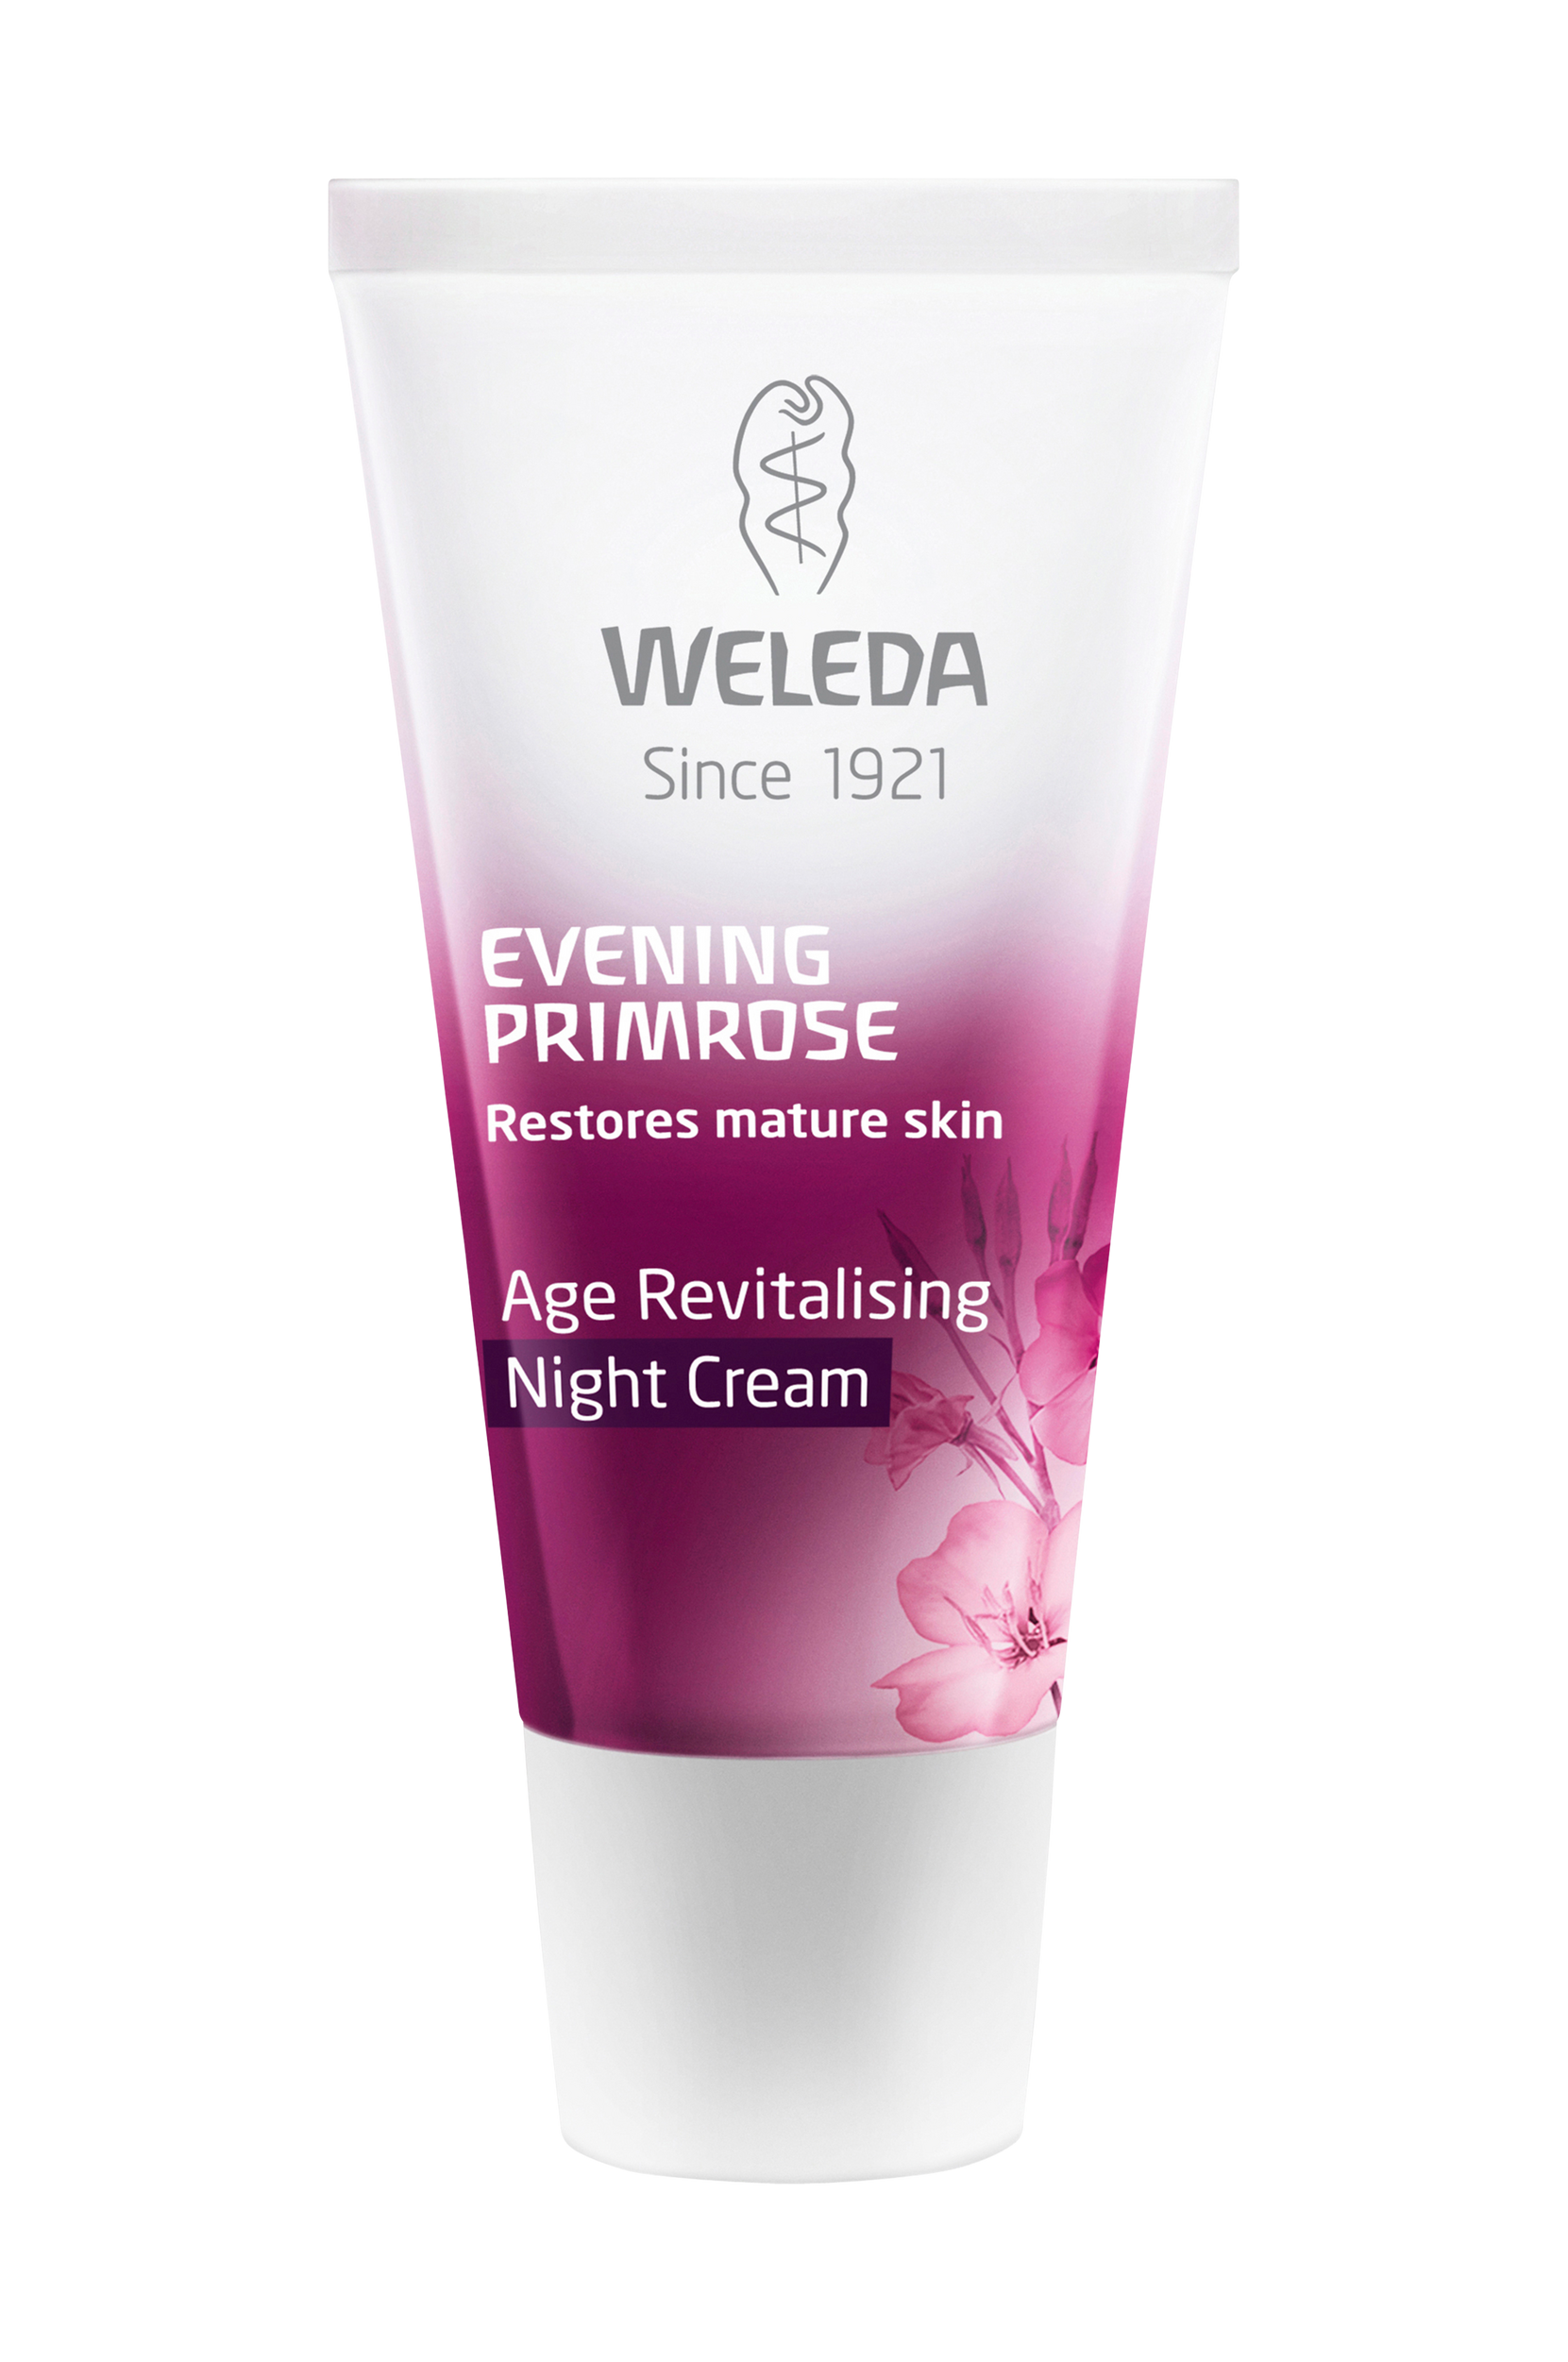 Evening Primrose Age Revitalising Night Cream, 30 ml, Weleda